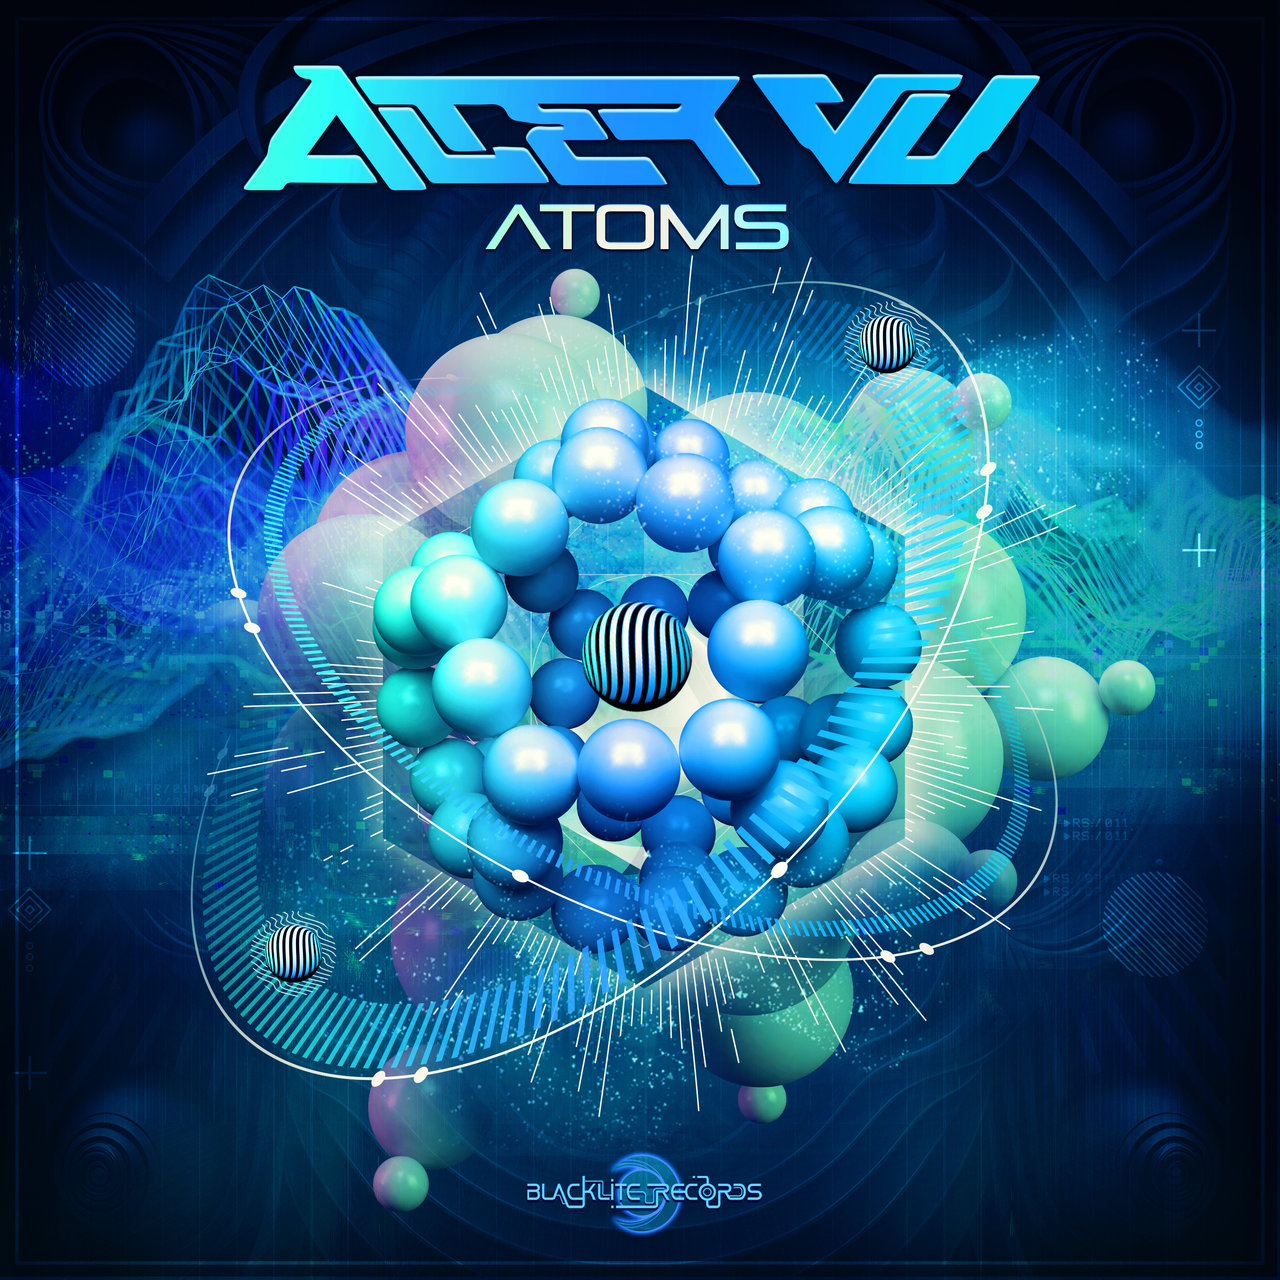 Atoms - Alter VU